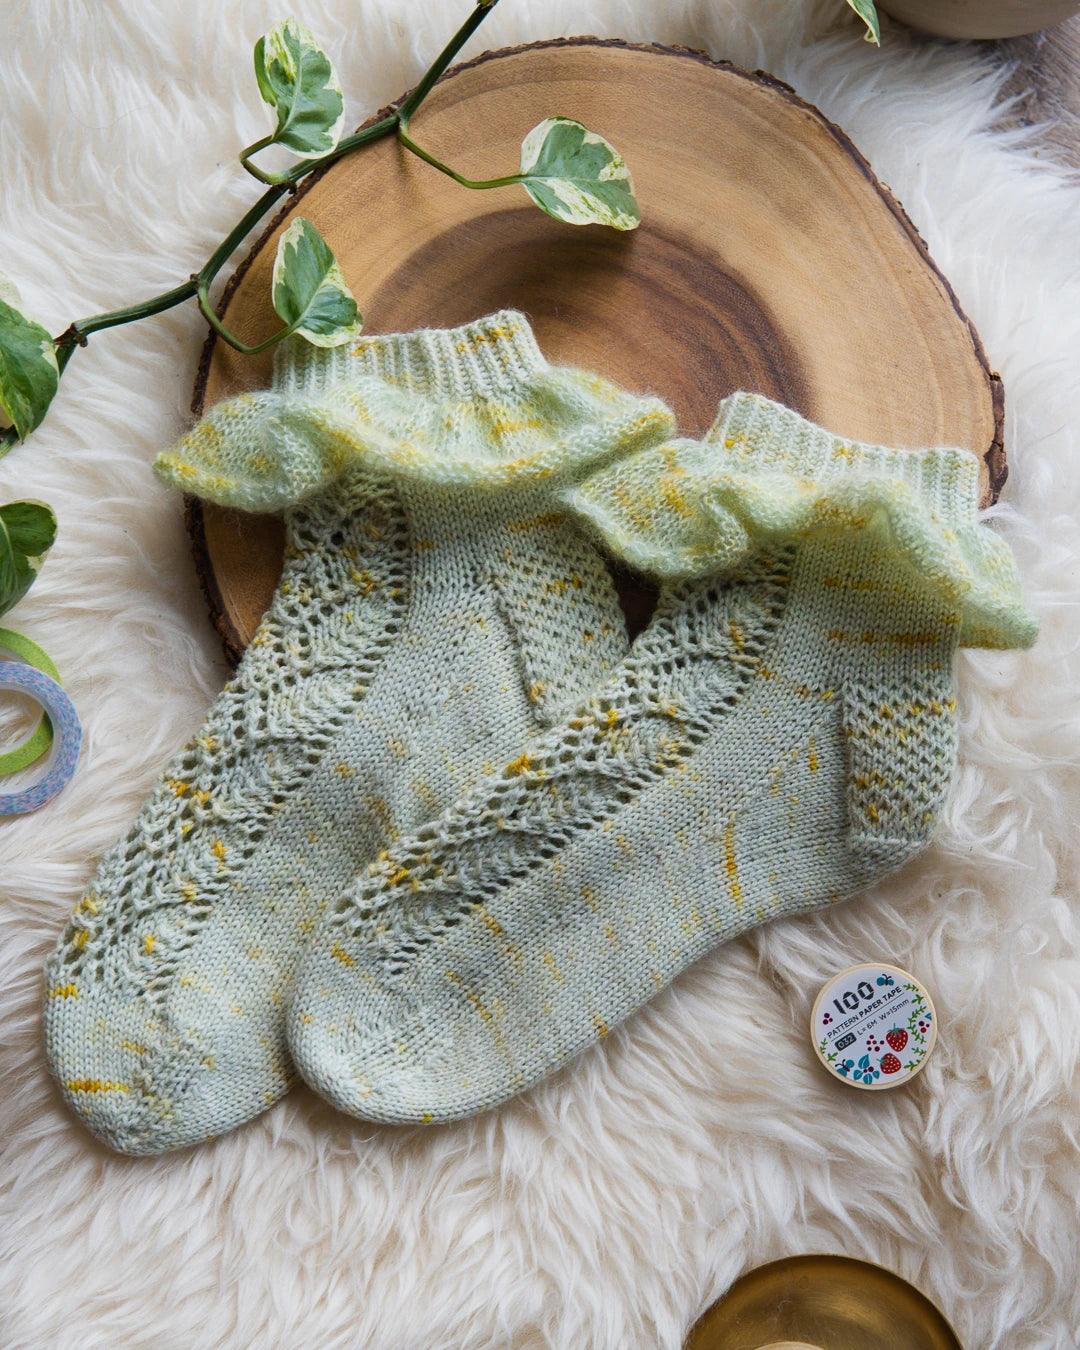 Lace sock knitting pattern with ruffle. 